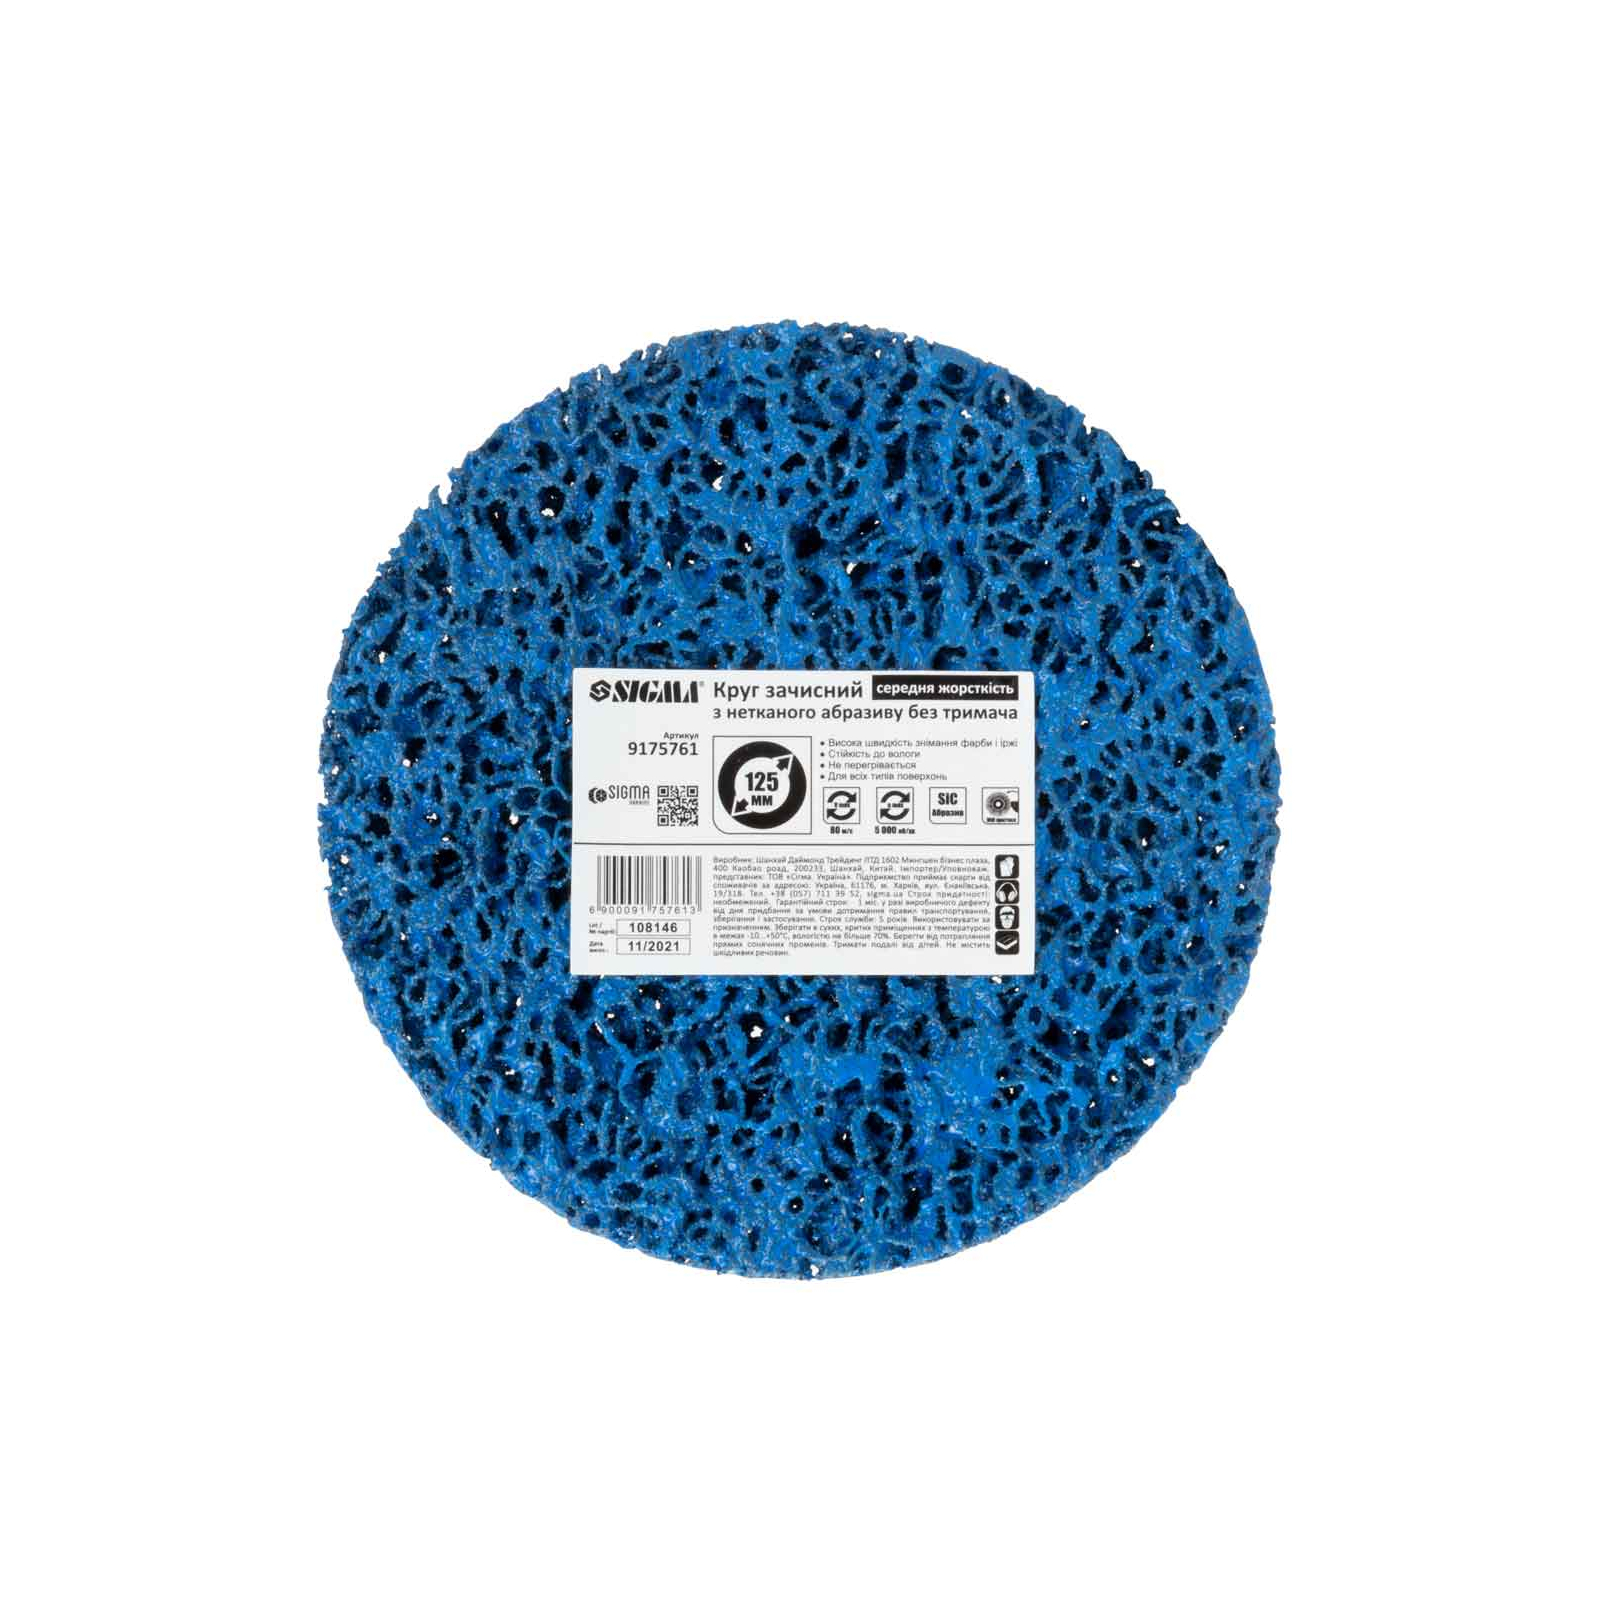 Круг зачистной Sigma из нетканого абразива (коралл) 125мм без держателя синий средняя жесткость (9175761) изображение 4